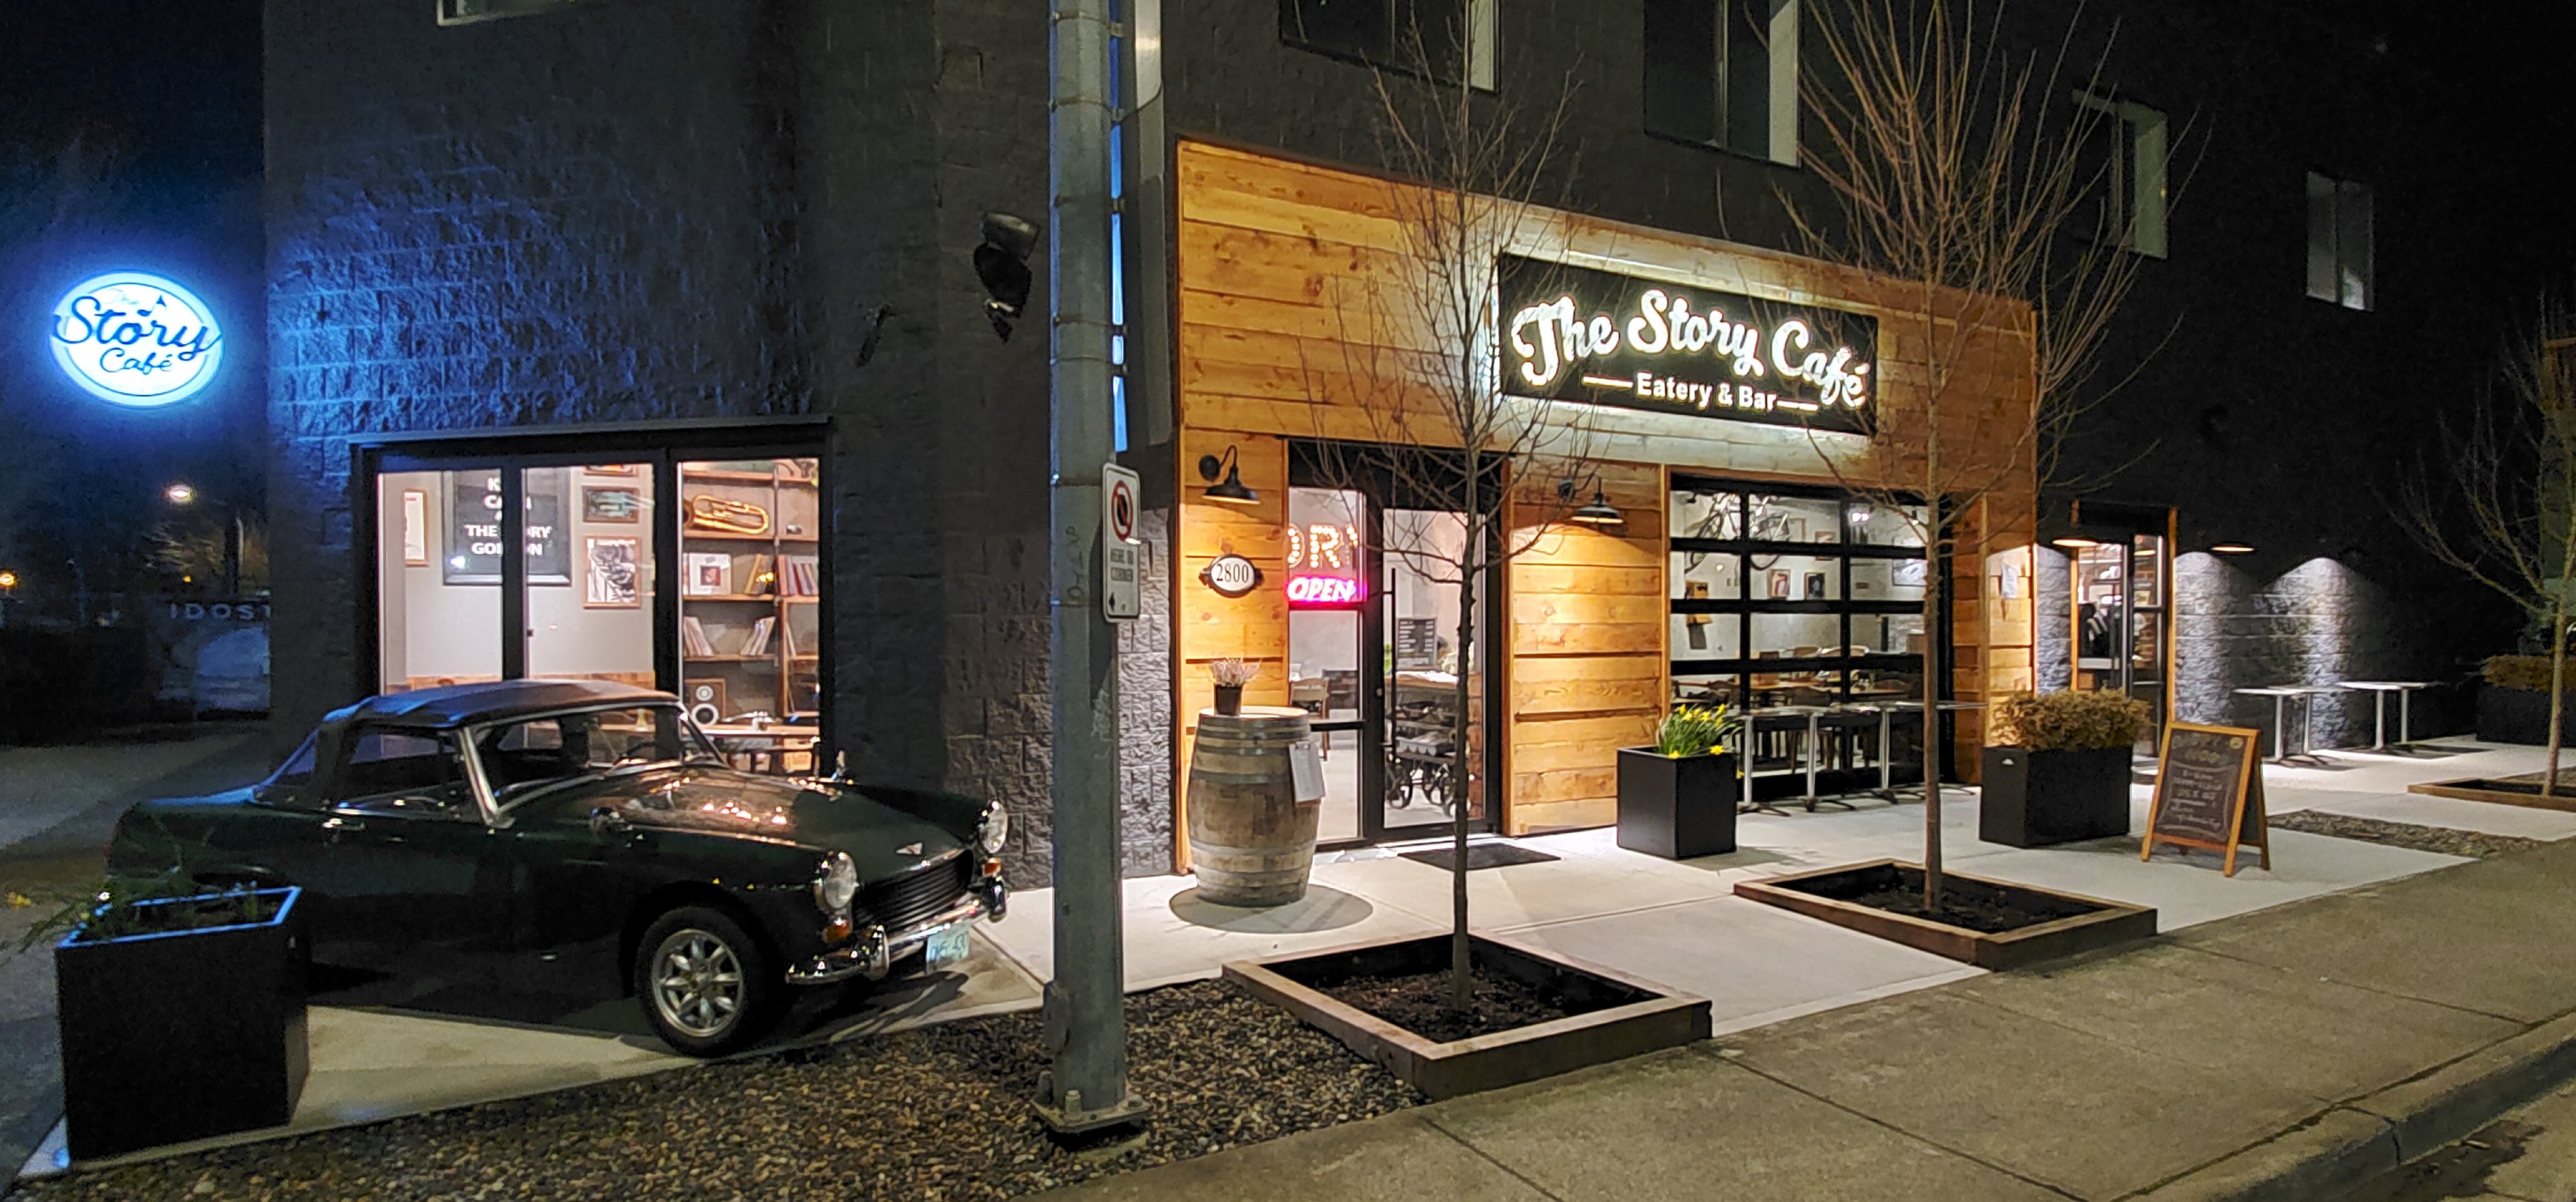 The Story Café – Eatery & Bar